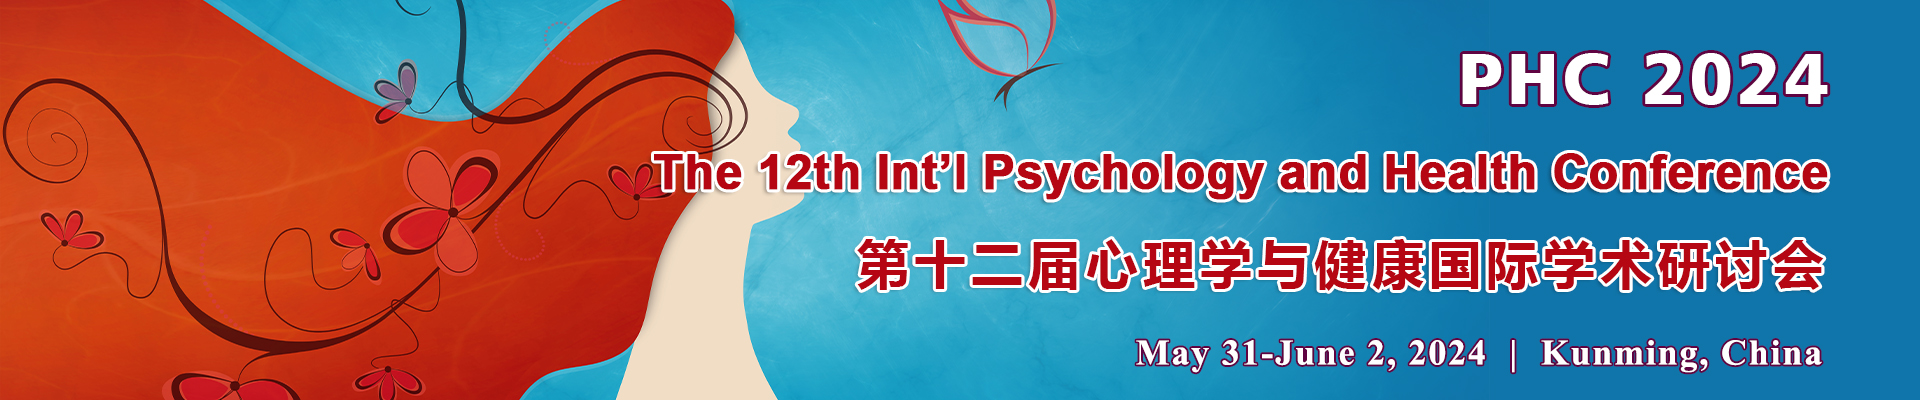 第十二届心理学与健康国际学术研讨会(PHC 2024)